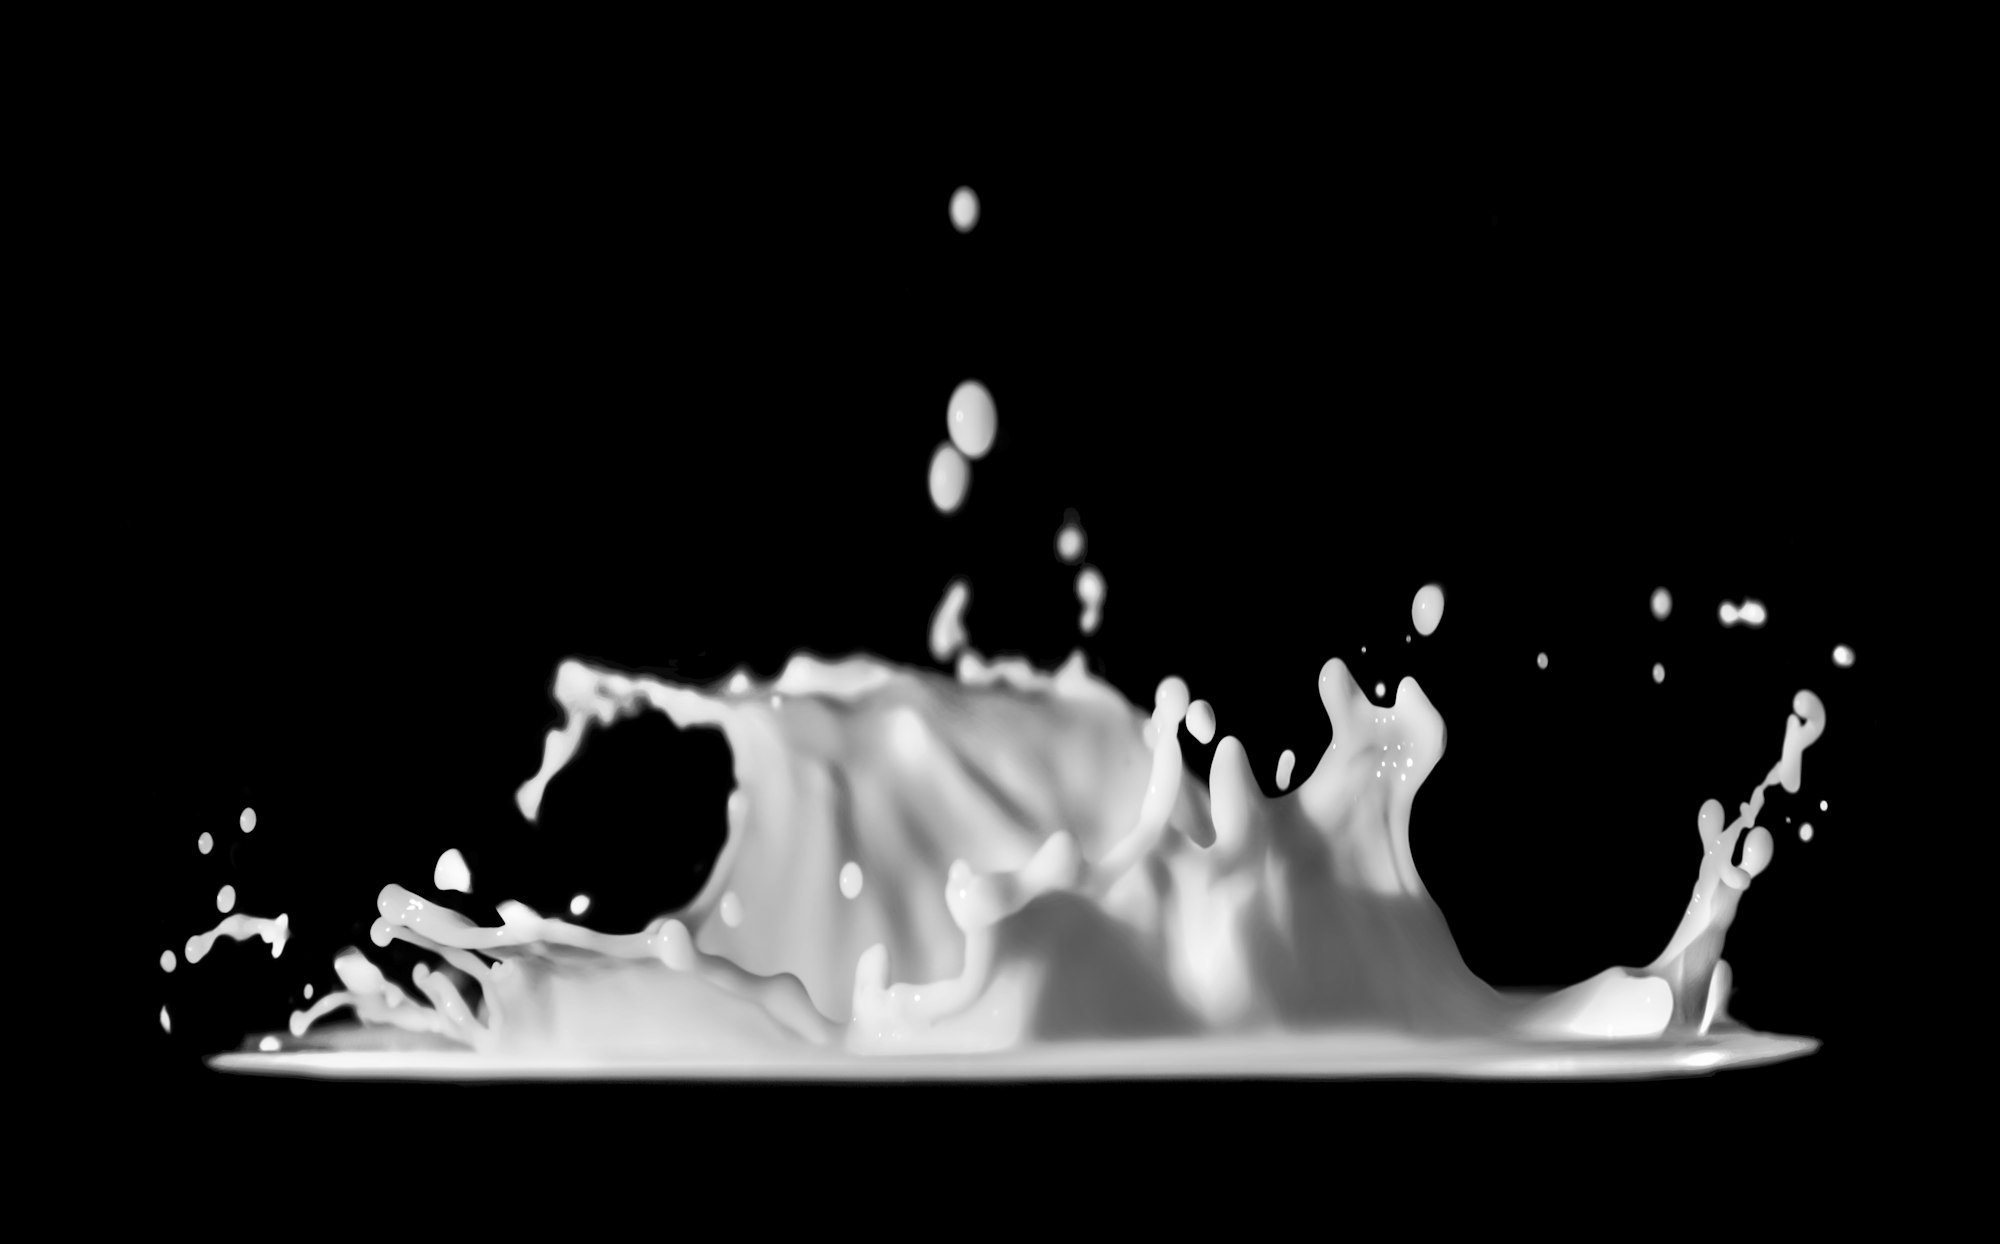 Milk Splash and bubbles in a black background by Daniel Sinoca Follow me on Instagram @daniel_sinoca_digital_art - YouTube:https://www.youtube.com/channel/UCPgt0gem2jKYZrIKPH57SPA - My website is danielsinoca.com